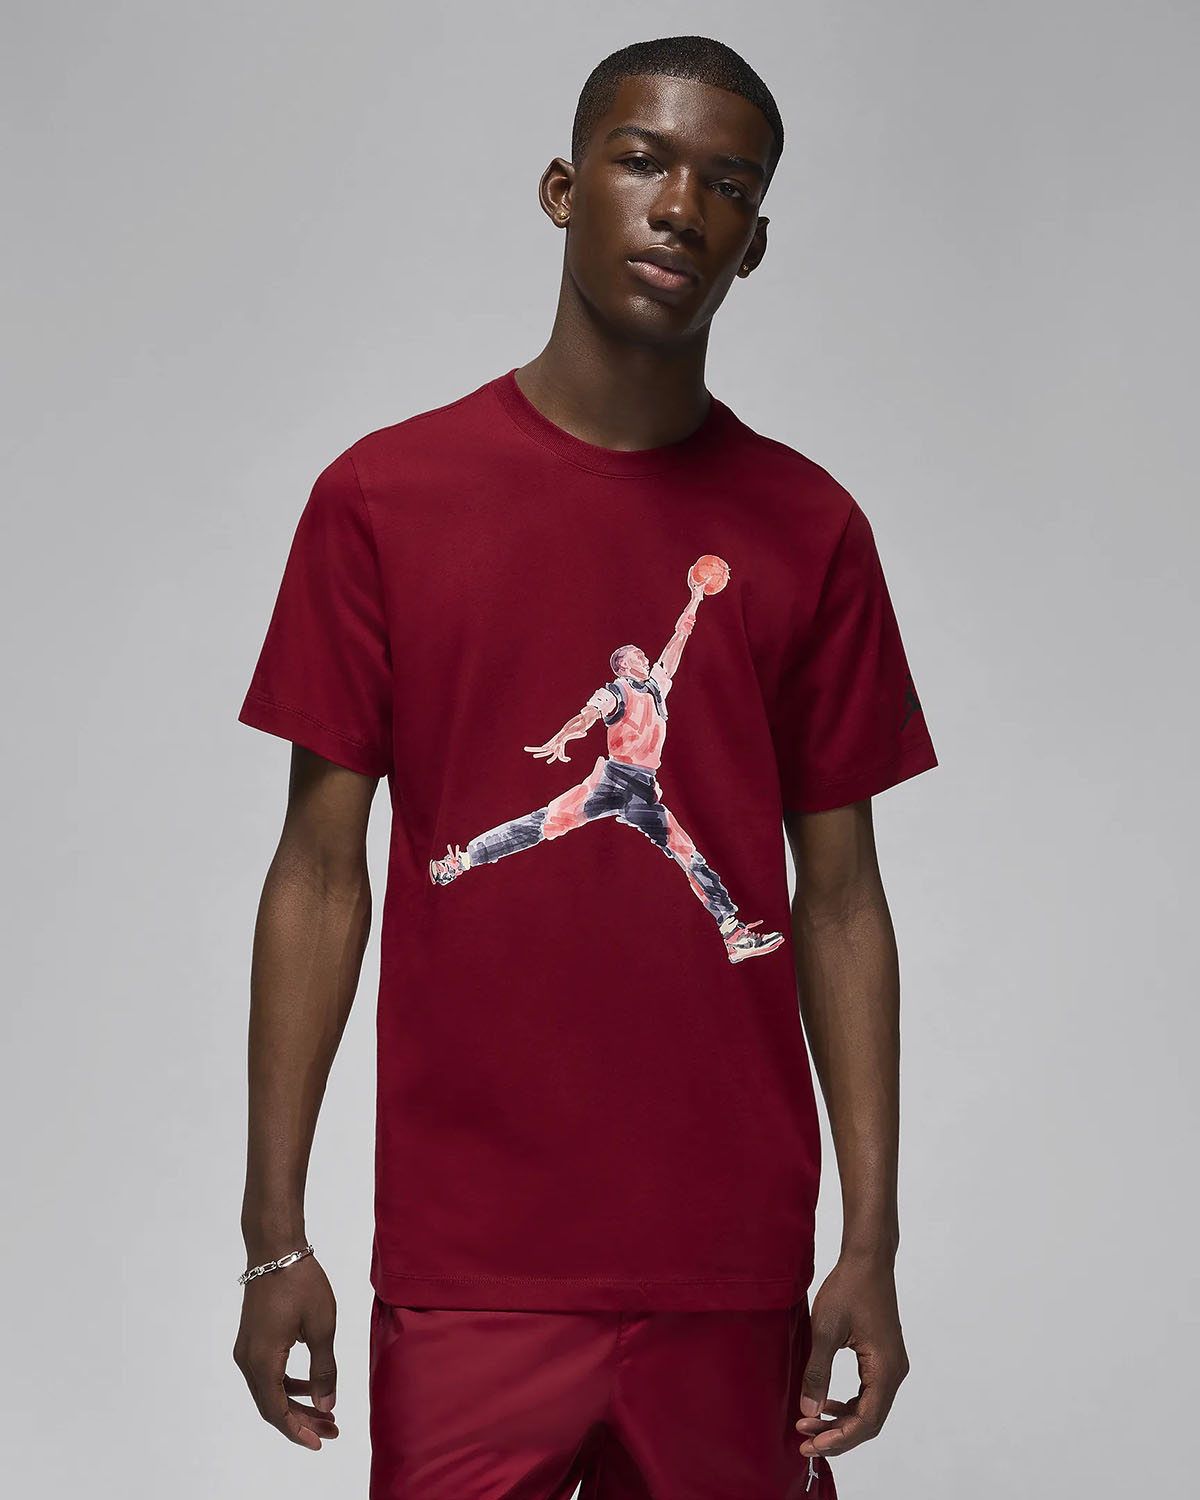 jordan jordans Jumpman T Shirt Team Red 1